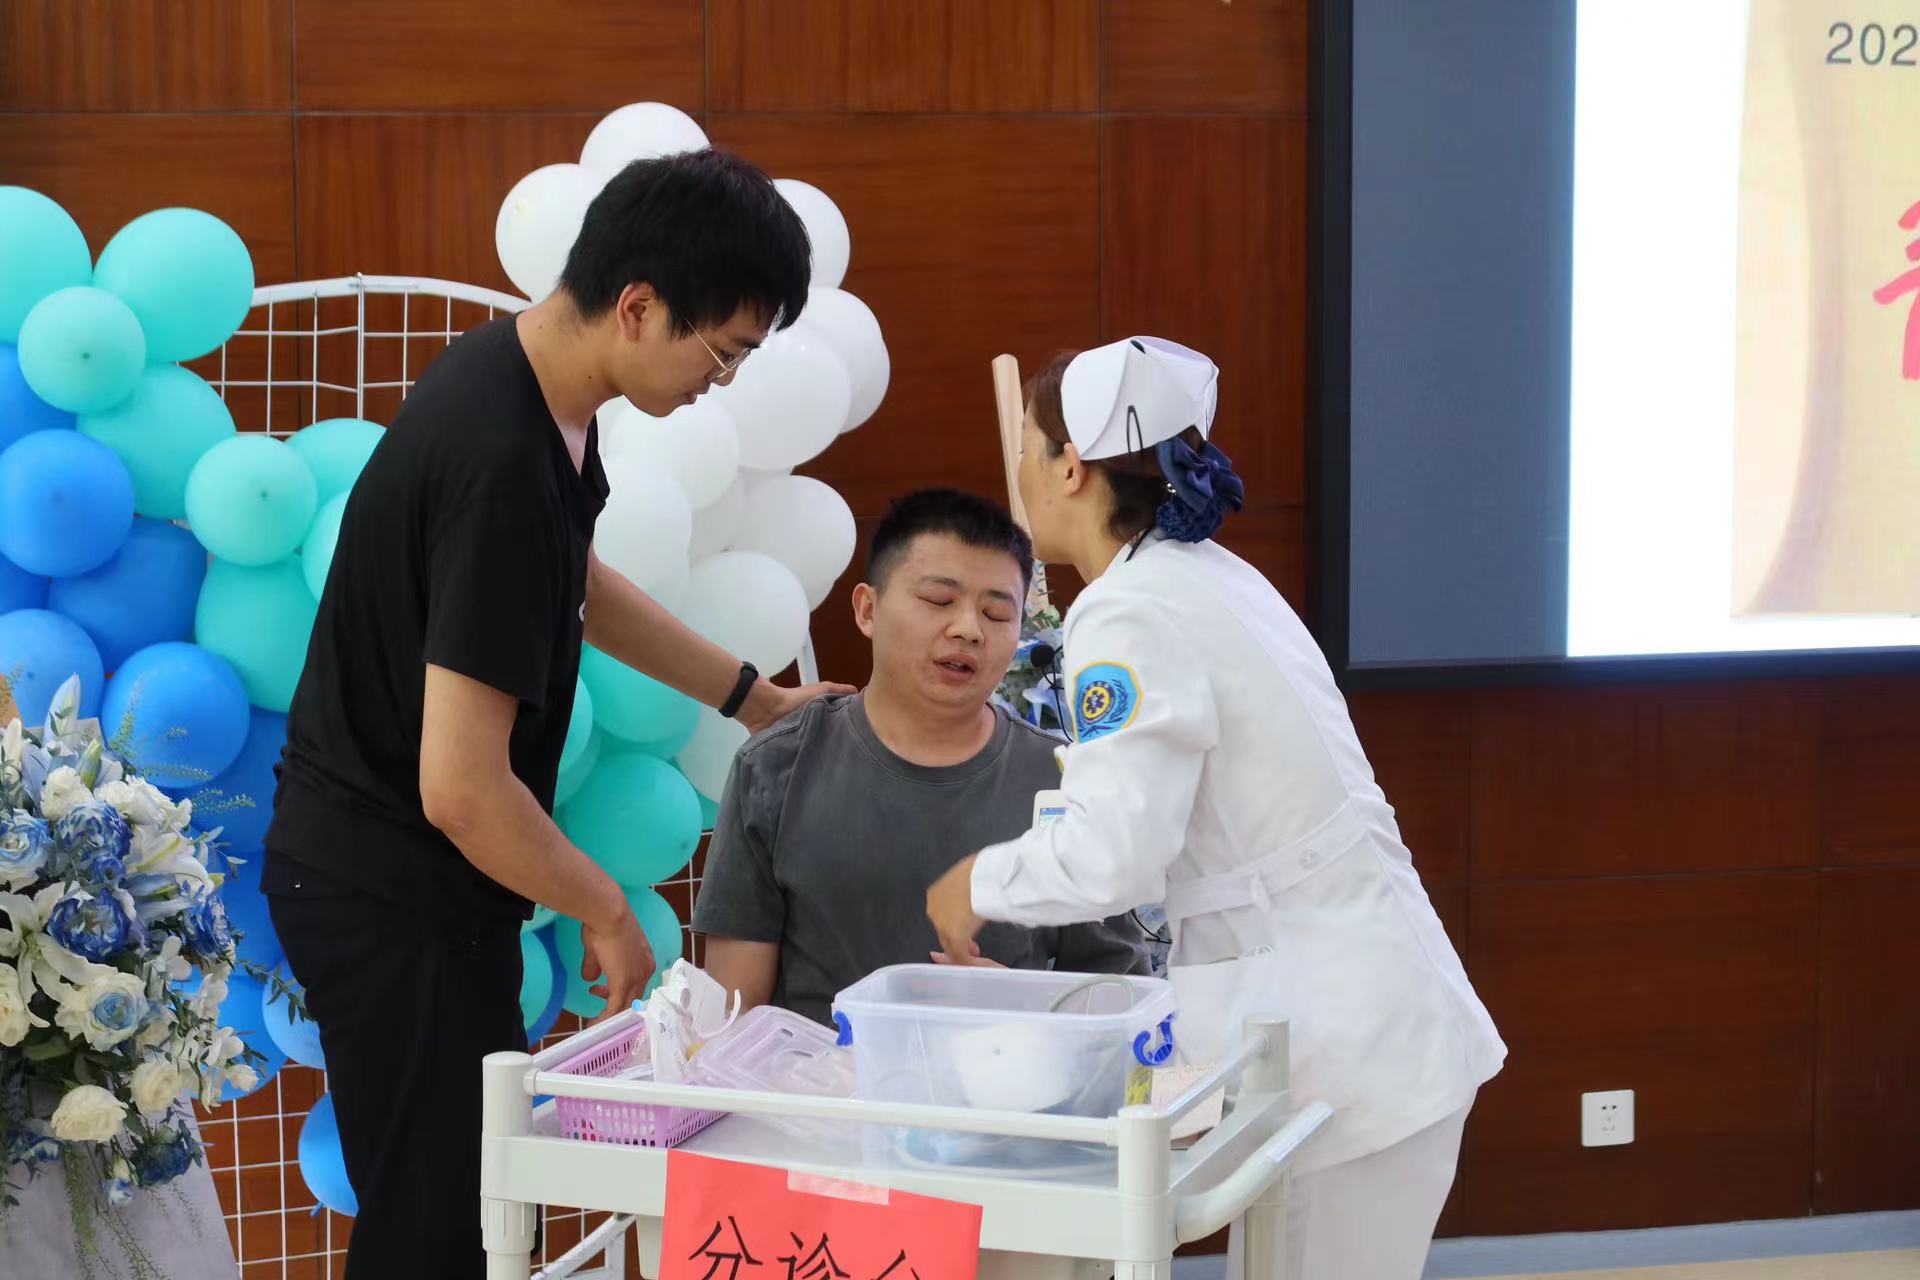 丽江市人民医院举行表彰活动庆祝第六届中国医师节 (8).jpg